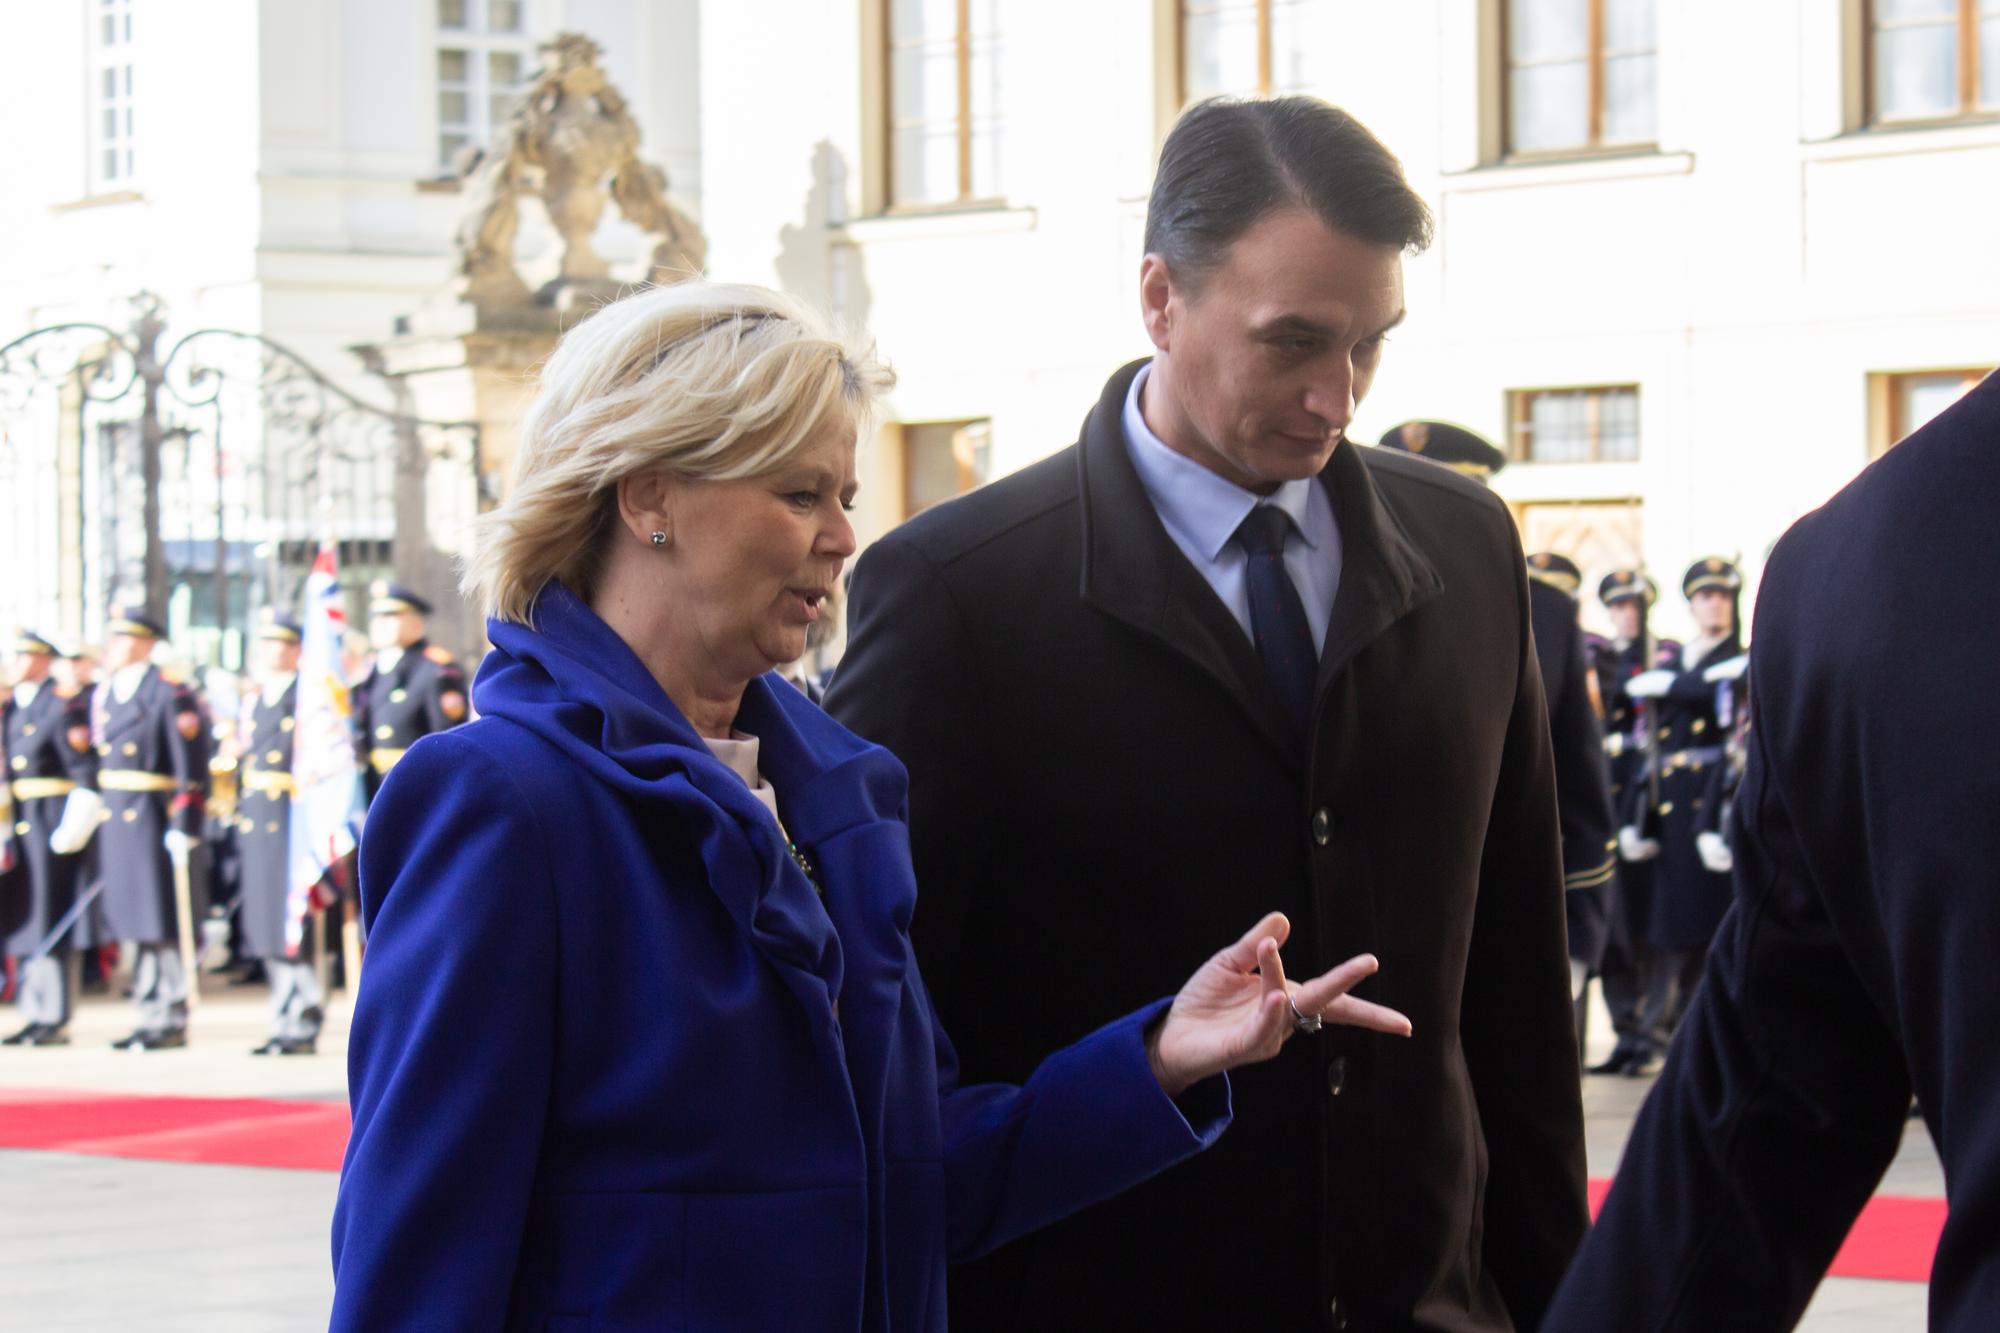 Manželka českého prezidenta Eva Pavlová a partner slovenskej hlavy štátu Juraj Rizman.